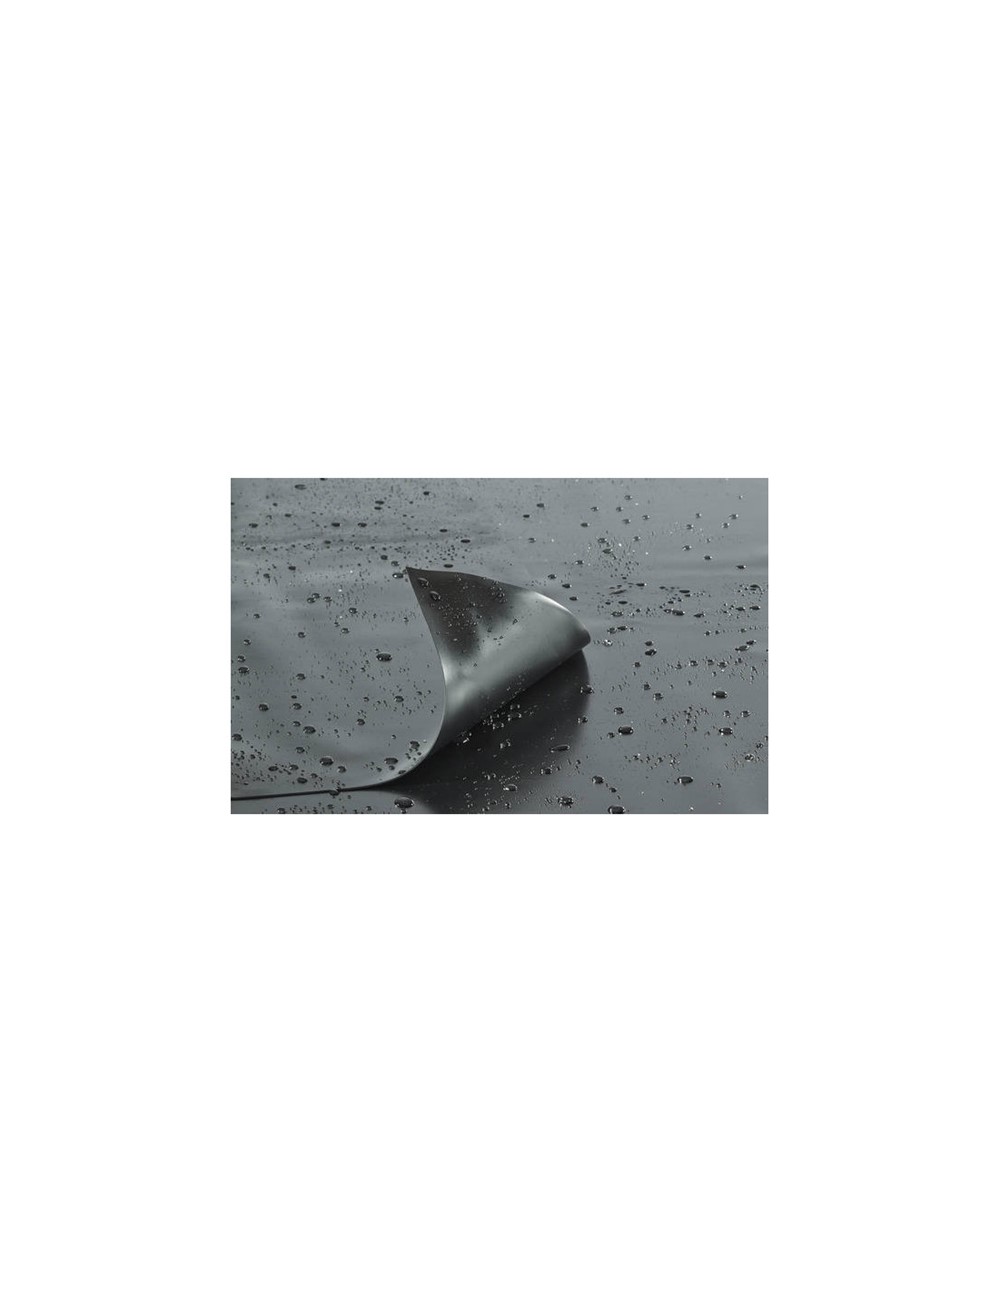 Bâche de bassin en PVC AlfaFol noir Ep. 0,5 mm, largeur 4 m (vendue au mètre carré)